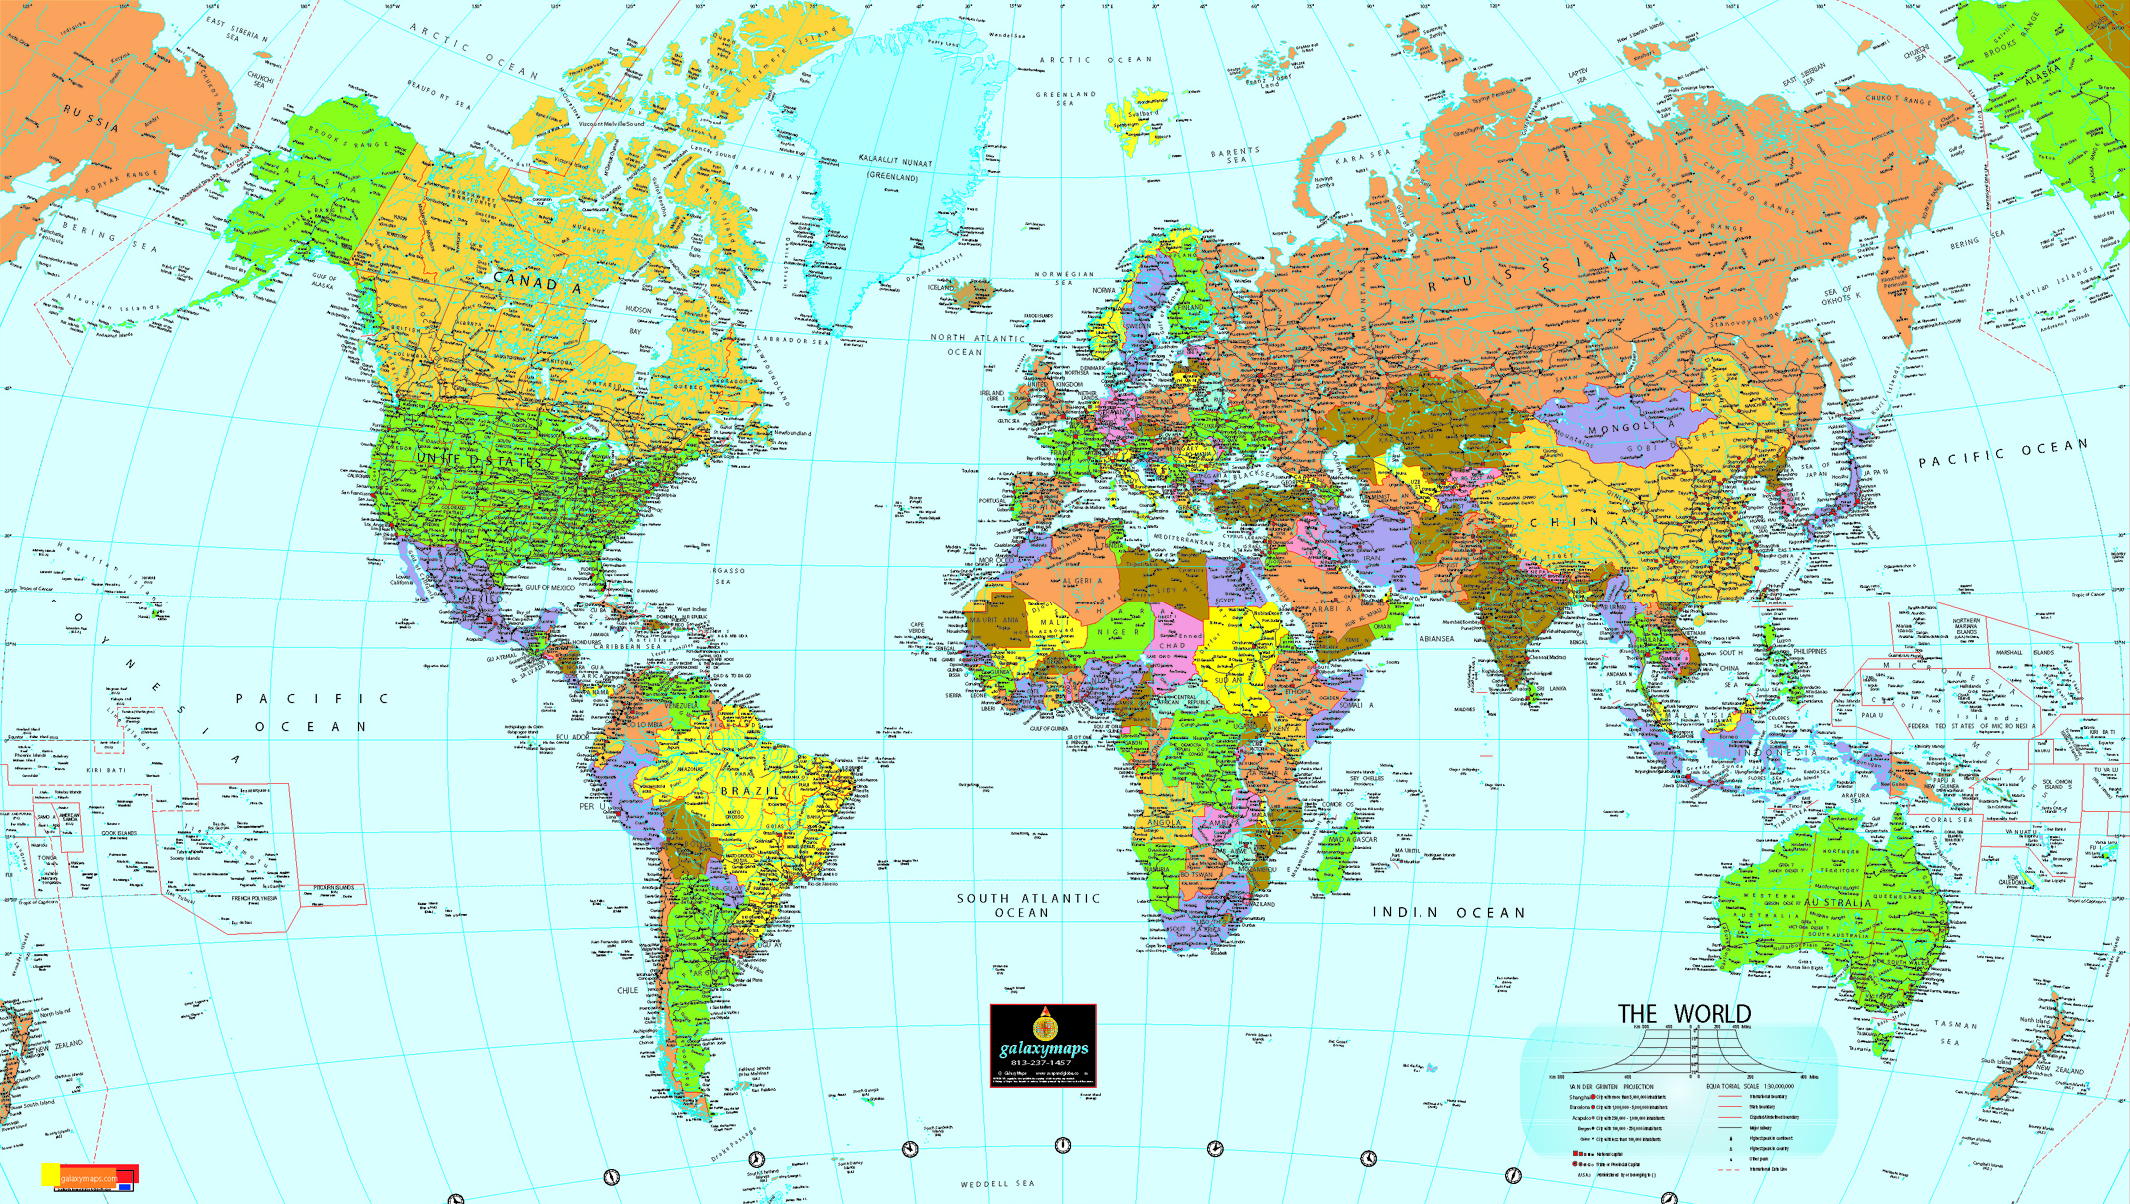 Mapa Politico del Mundo